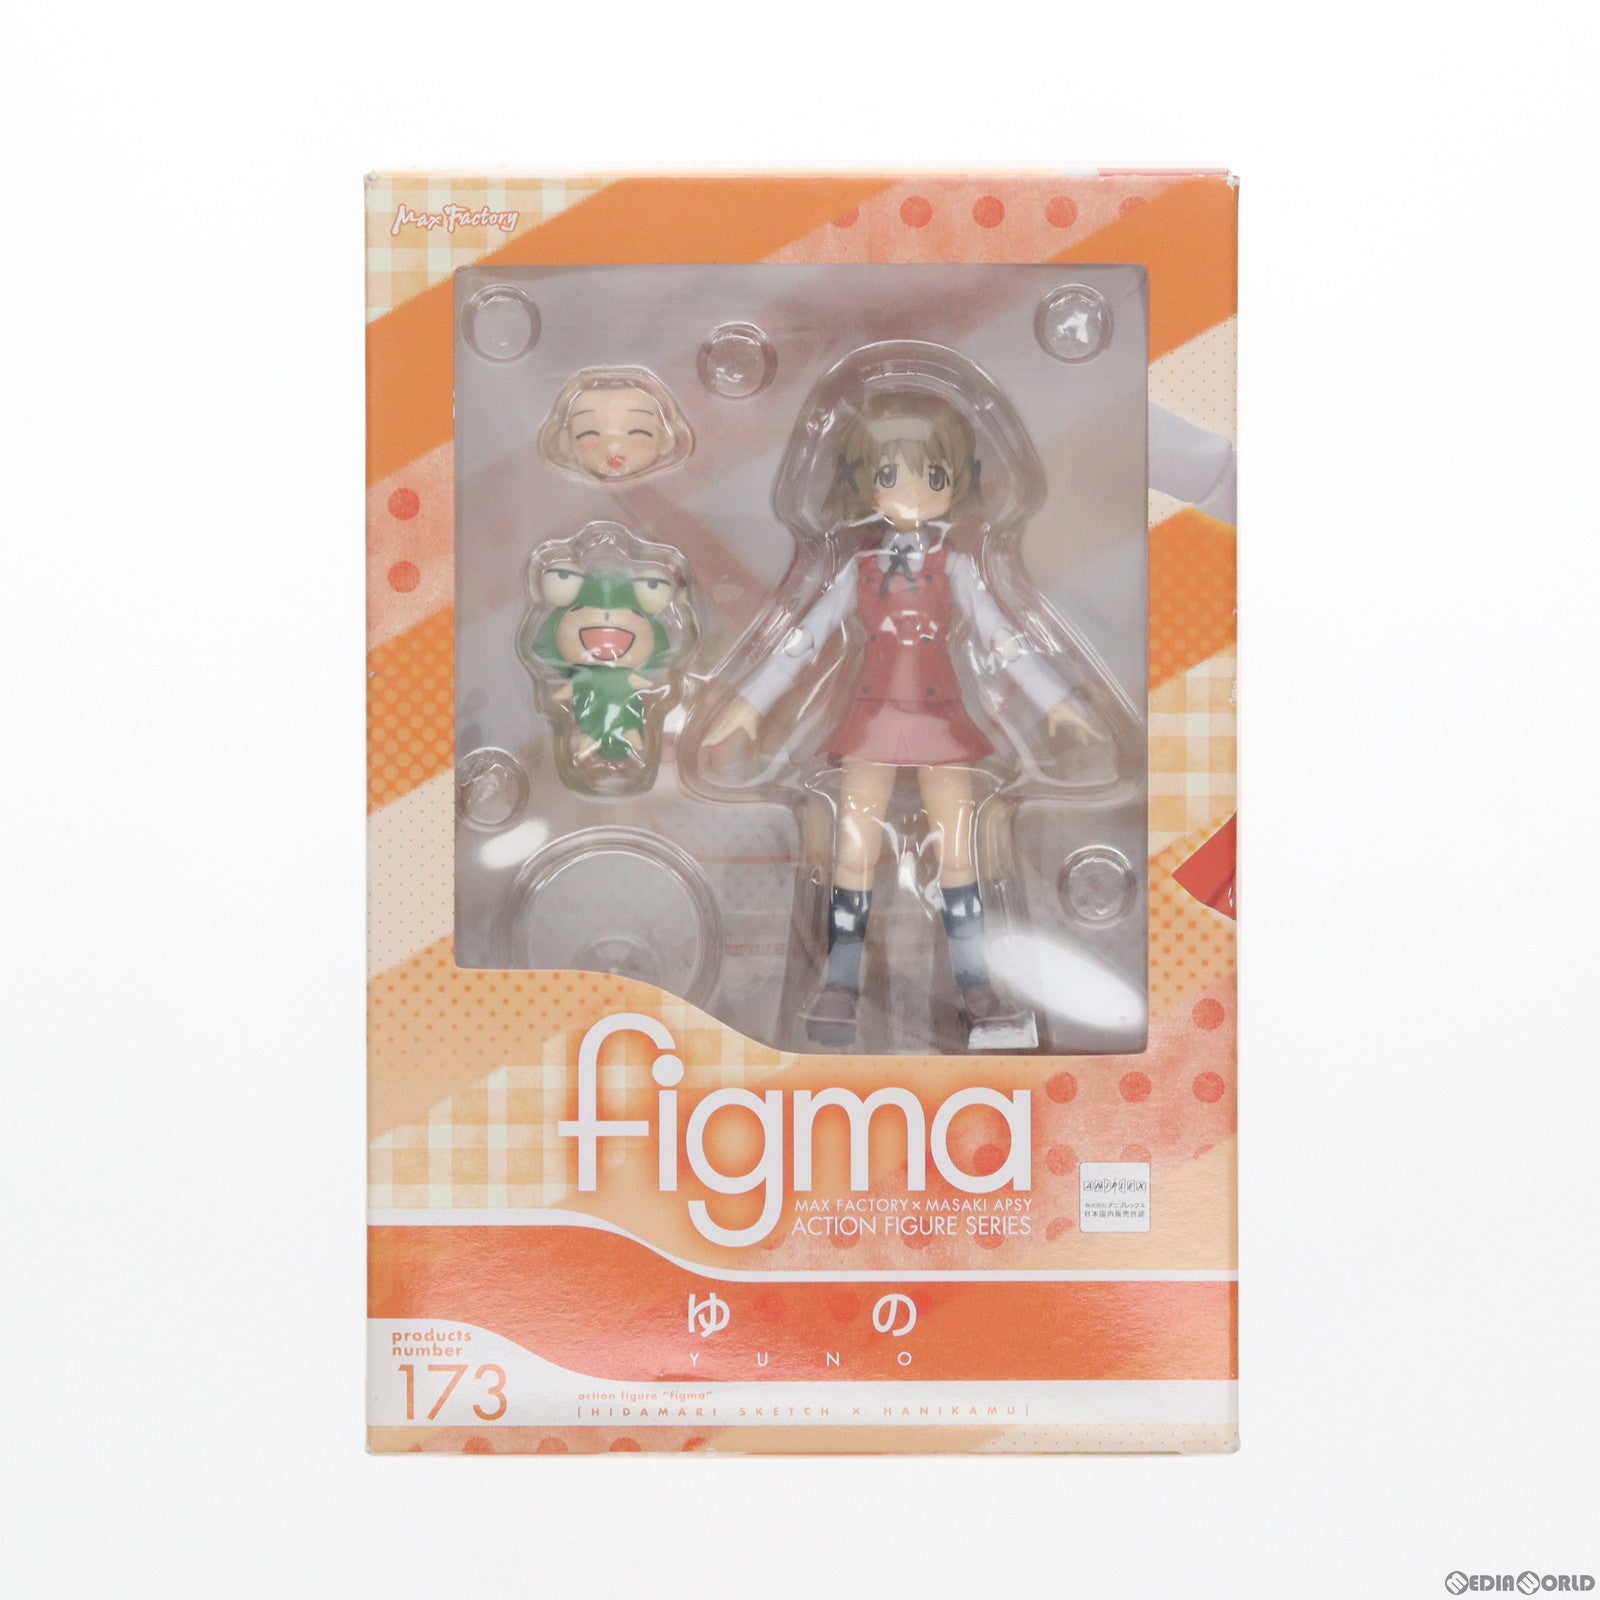 【中古即納】[FIG]figma(フィグマ) 173 ゆの ひだまりスケッチ×ハニカム 完成品 可動フィギュア マックスファクトリー(20130526)